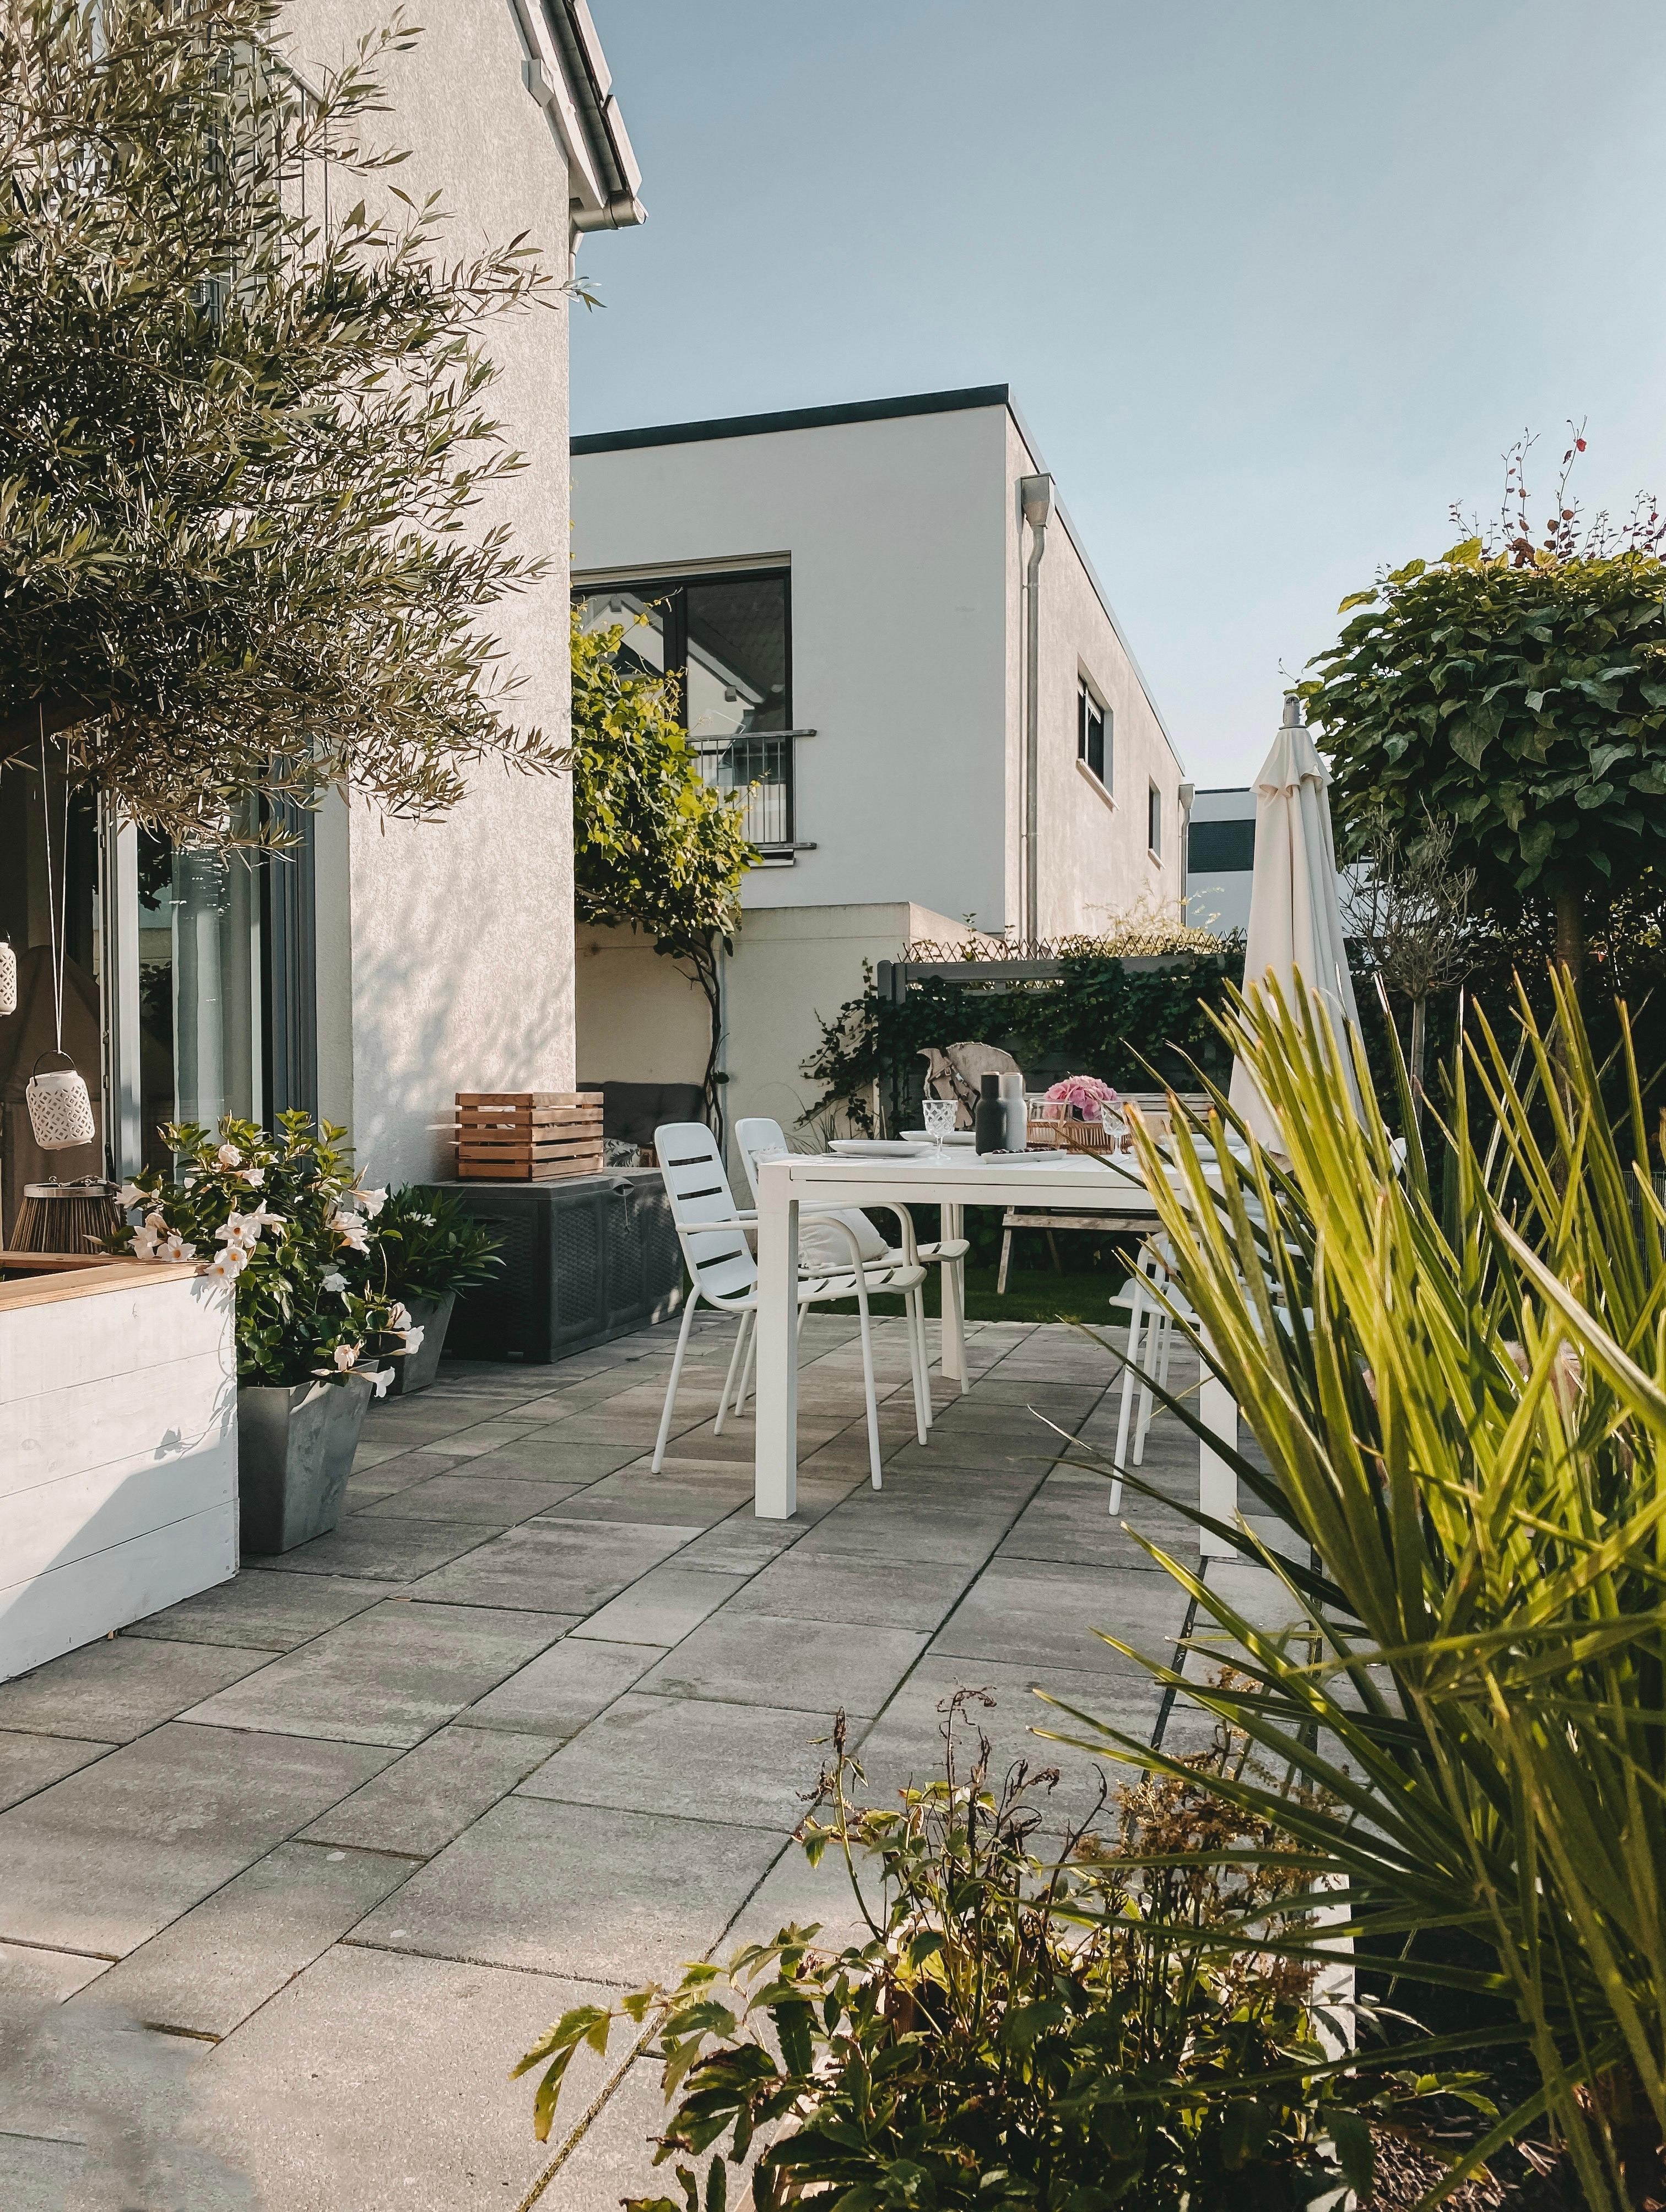 Liebe Grüße von der Terrasse 🌸
#Gartenglück
#Terrassengestaltung
#Terrasse